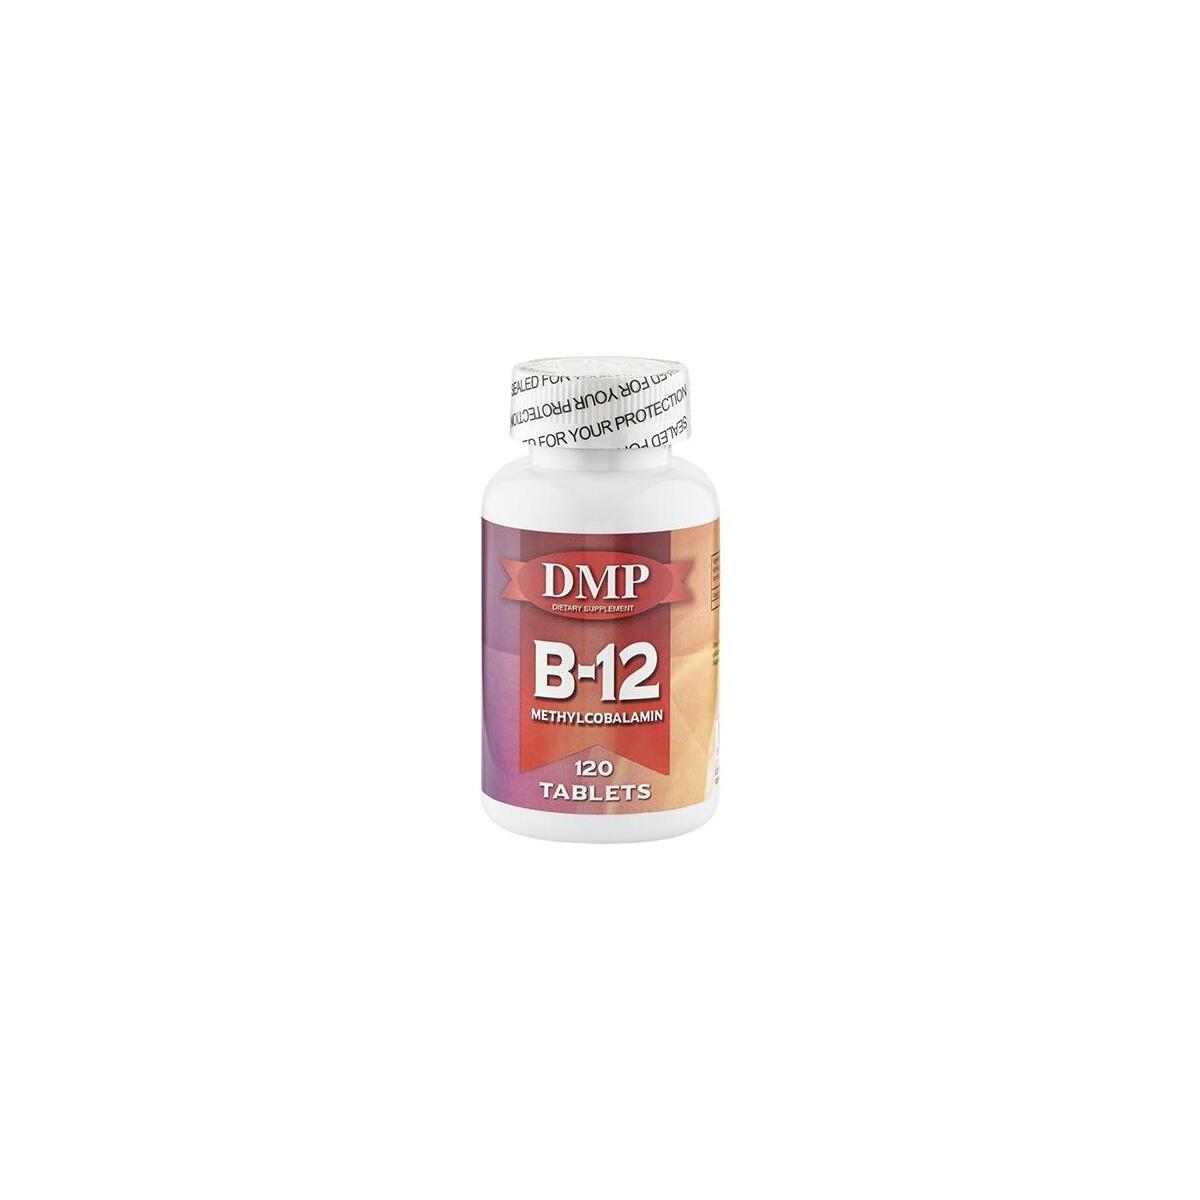 Dmp Vitamin B12 Vitamini Methylcobalamin 120 Tablet